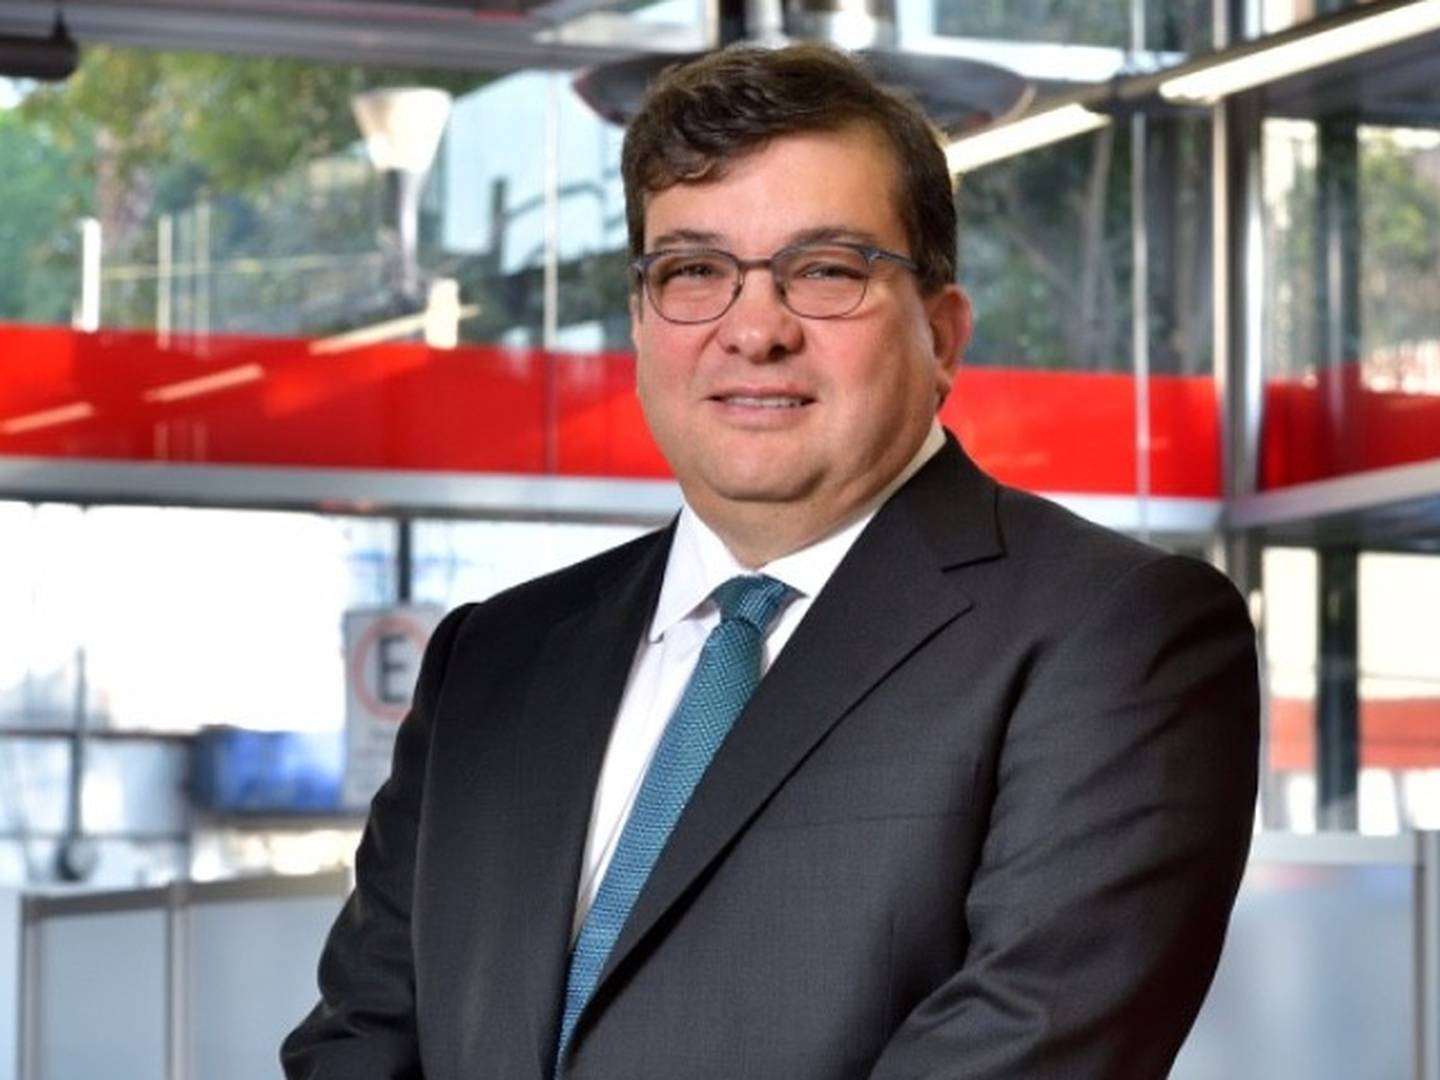 Jorge Arce, CEO de HSBC México, también presidirá el Consejo de Administración.